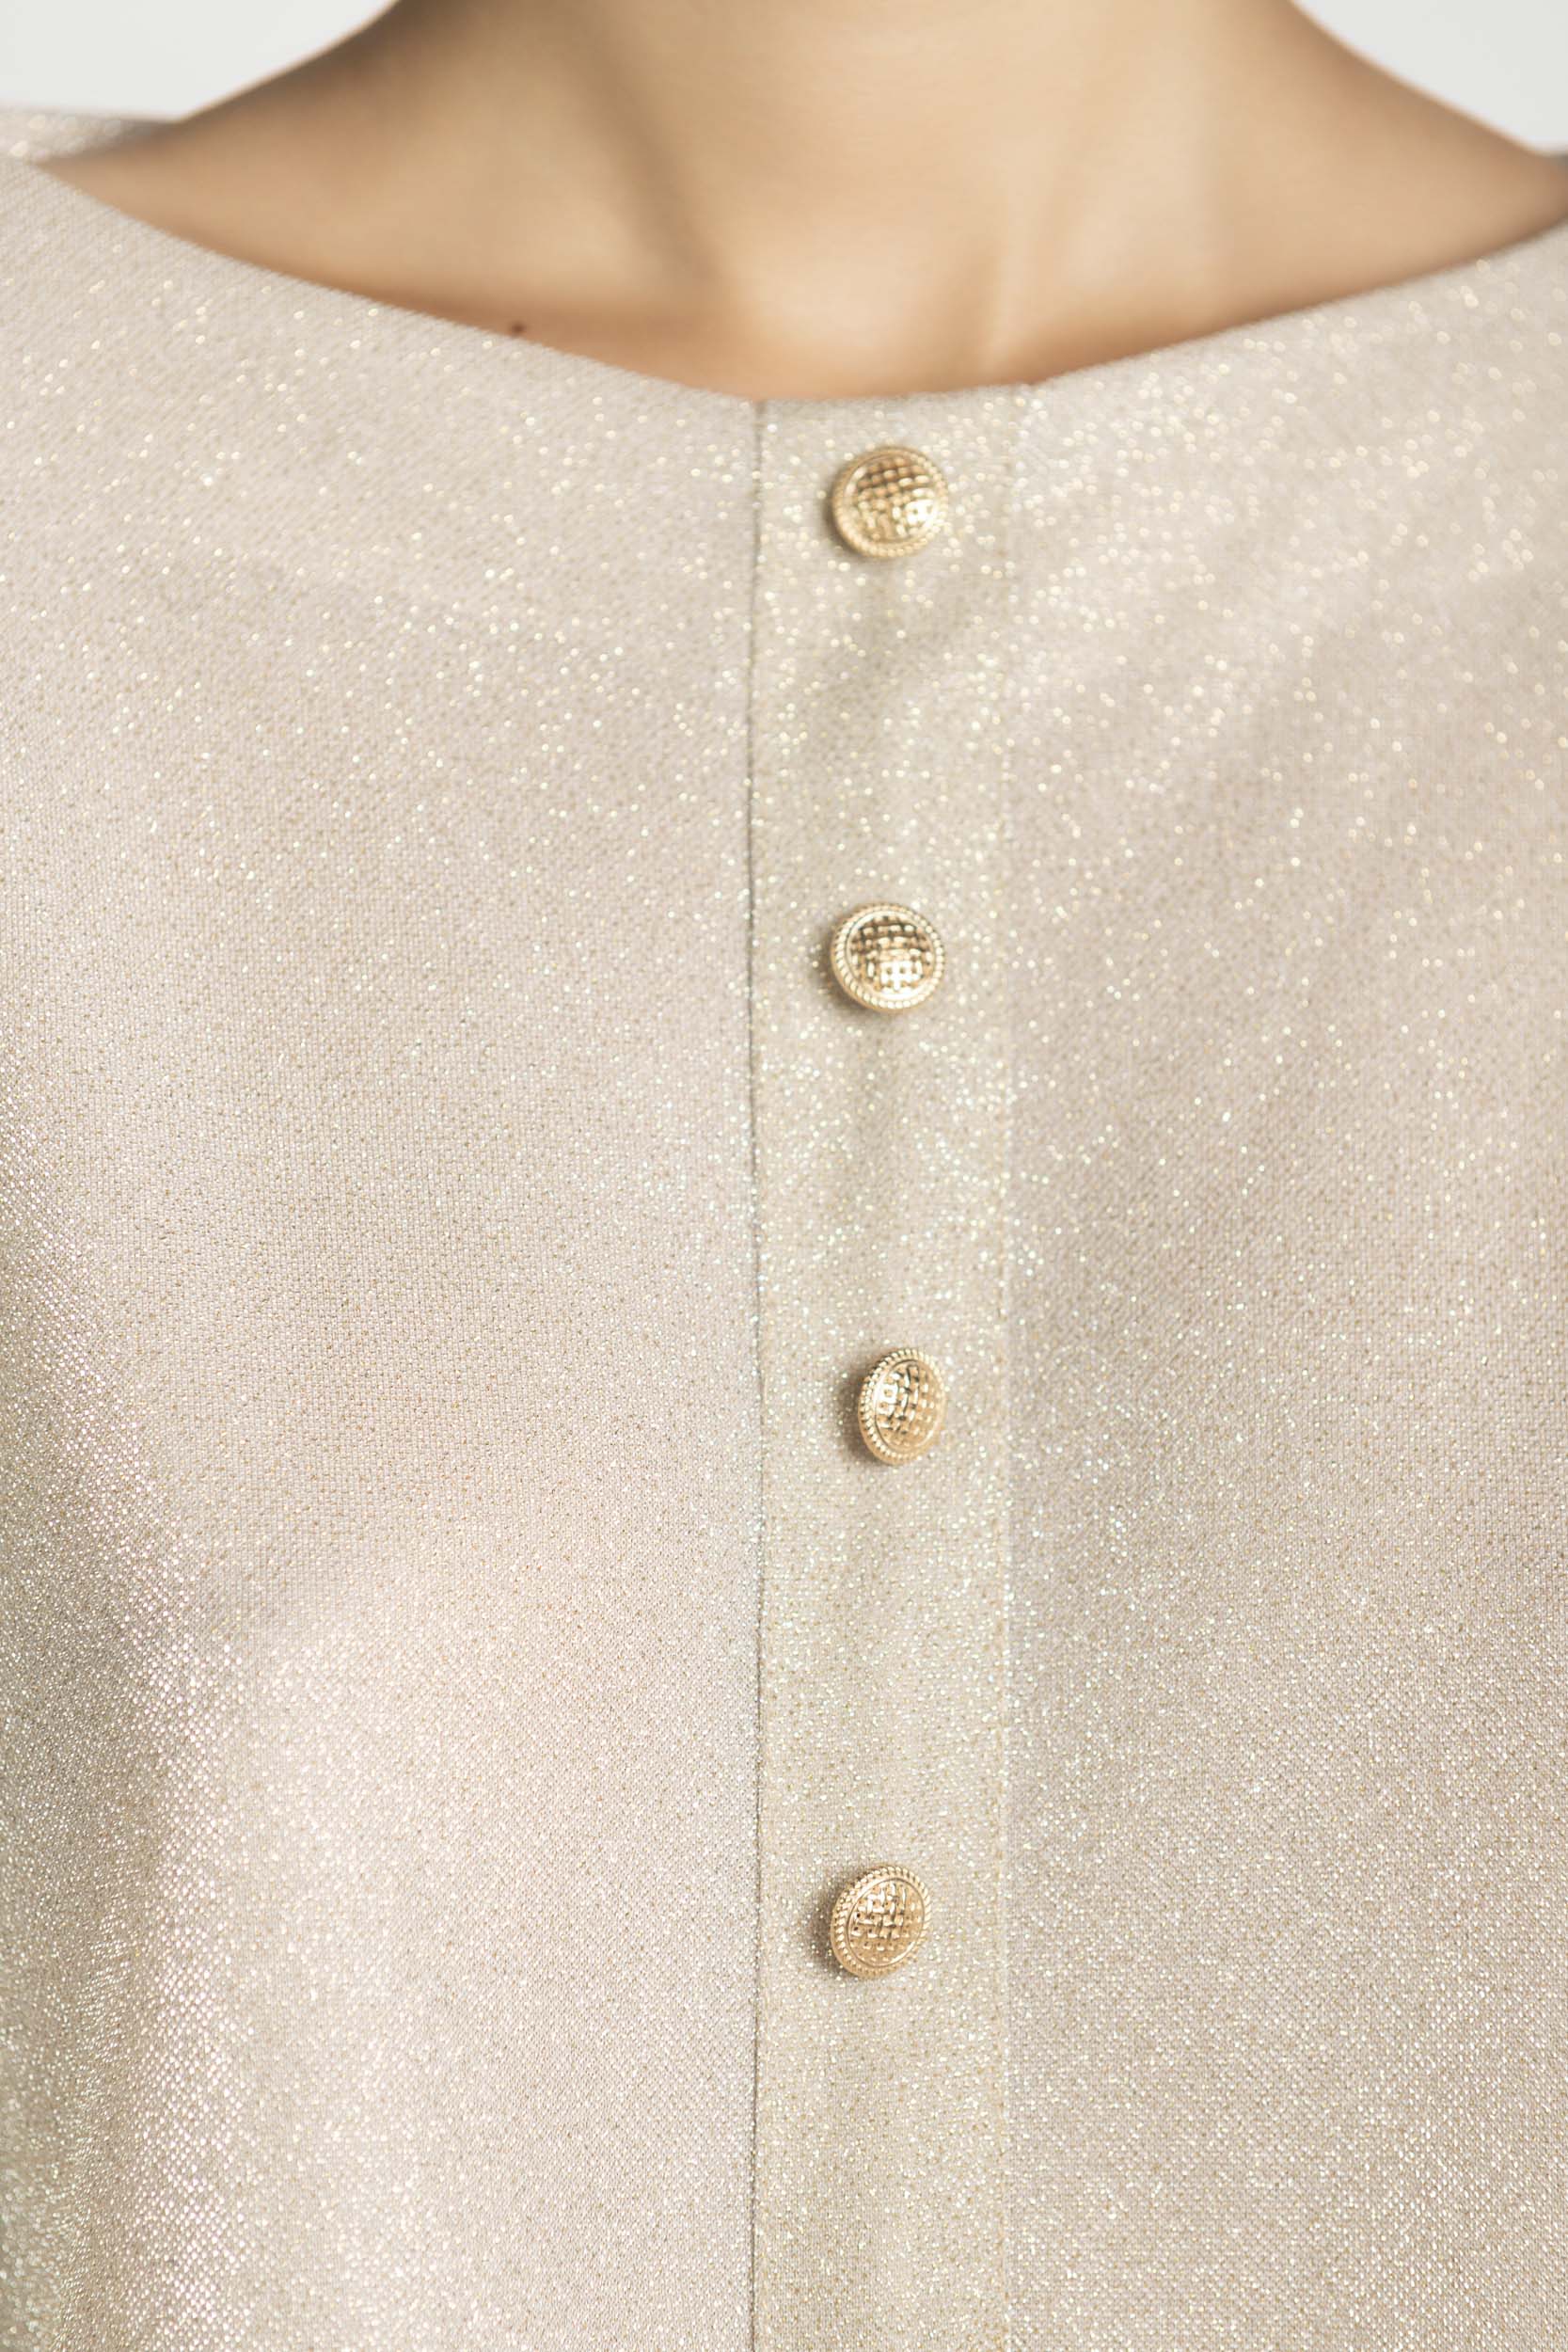 Gold Glitter Transparent Top, gold buttons details.